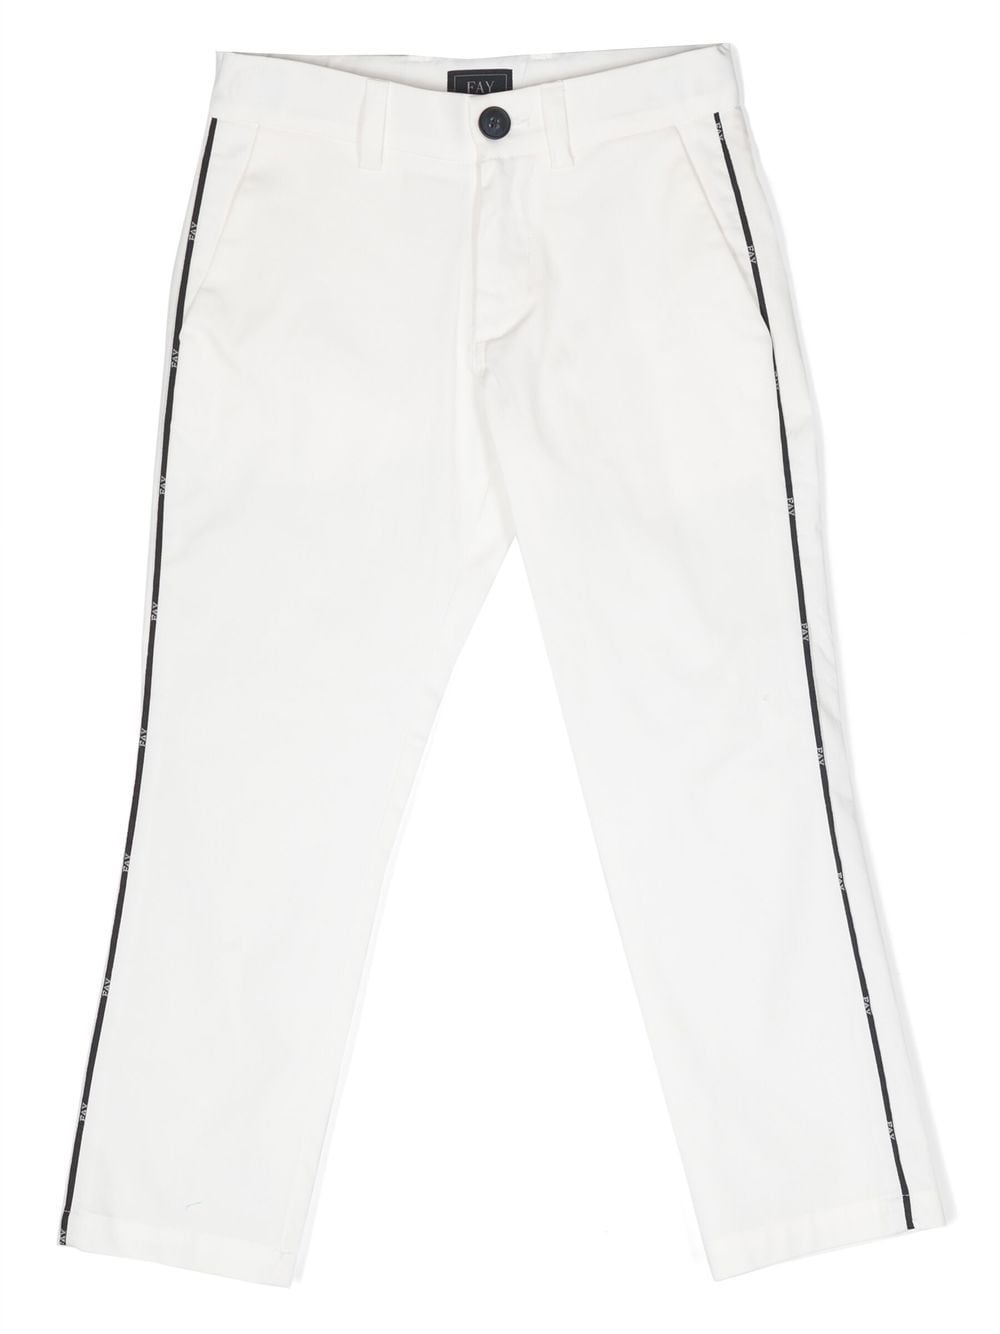 Pantalone bianco per bambino